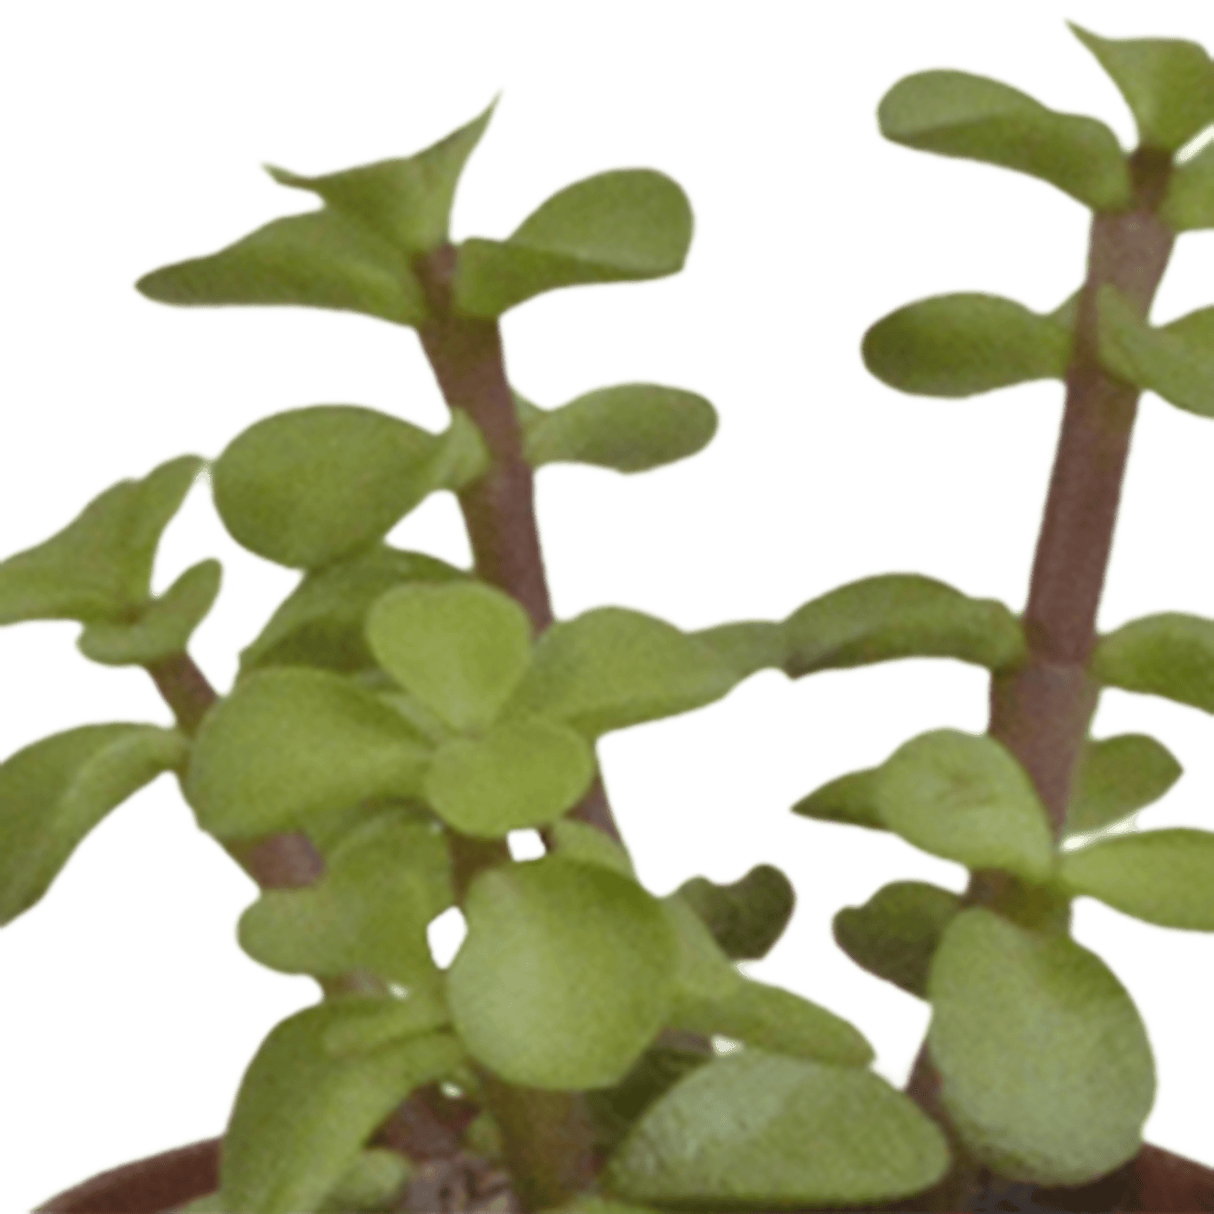 Livraison plante - Succulentes, box de 10 plantes - h13cm, Ø5,5cm - plantes d'intérieur